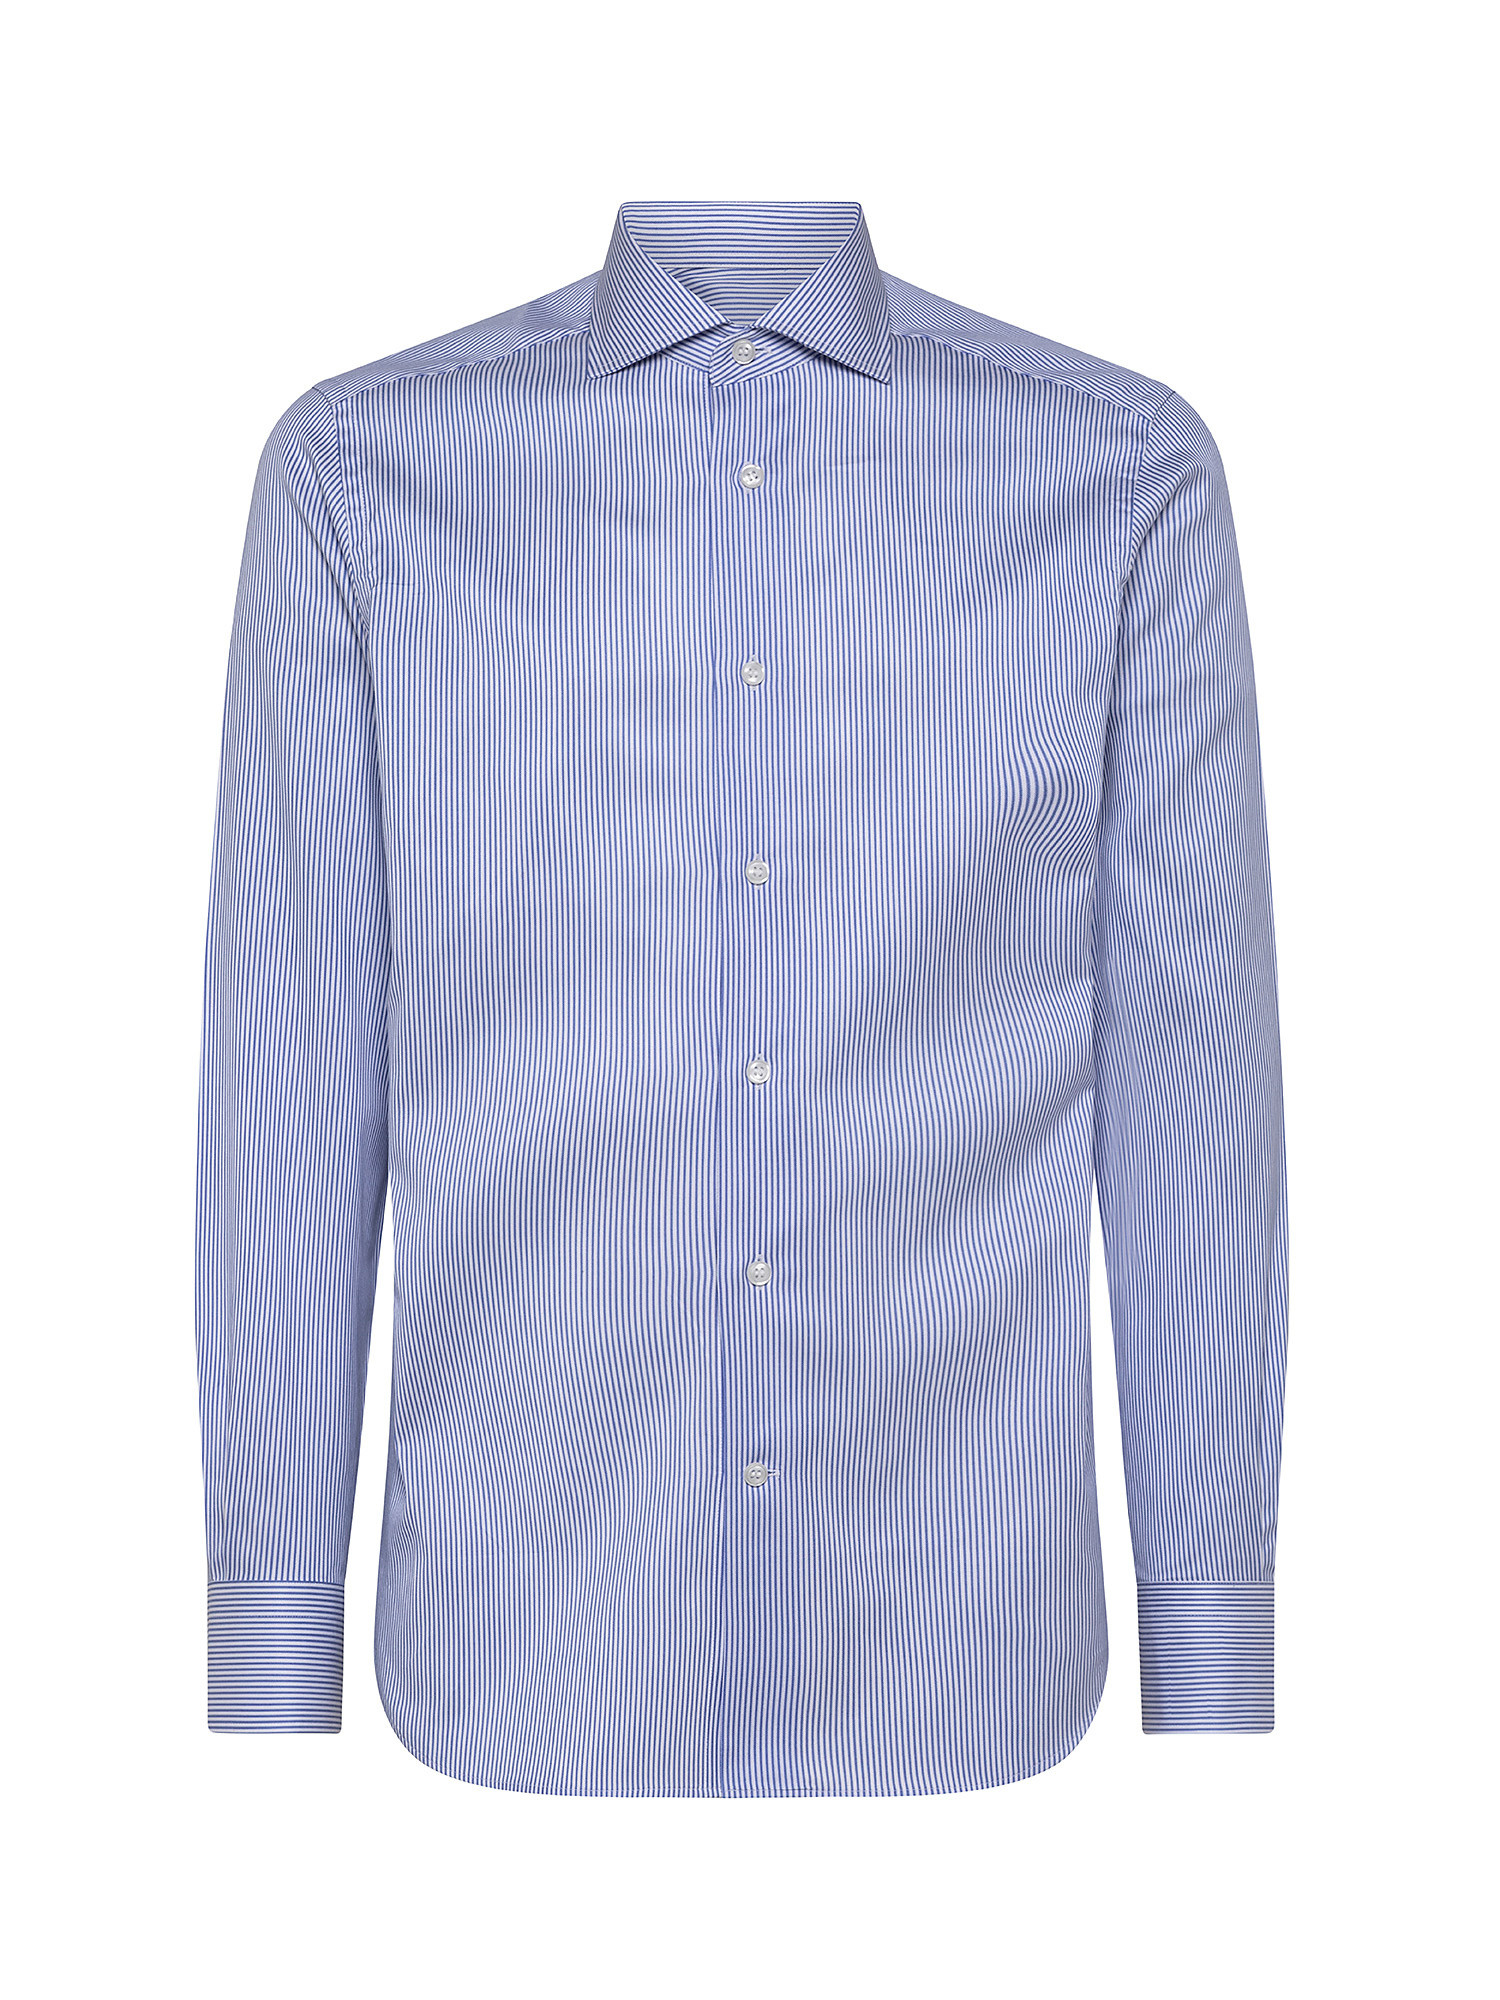 Camicia slim fit twill di cotone, Azzurro, large image number 0